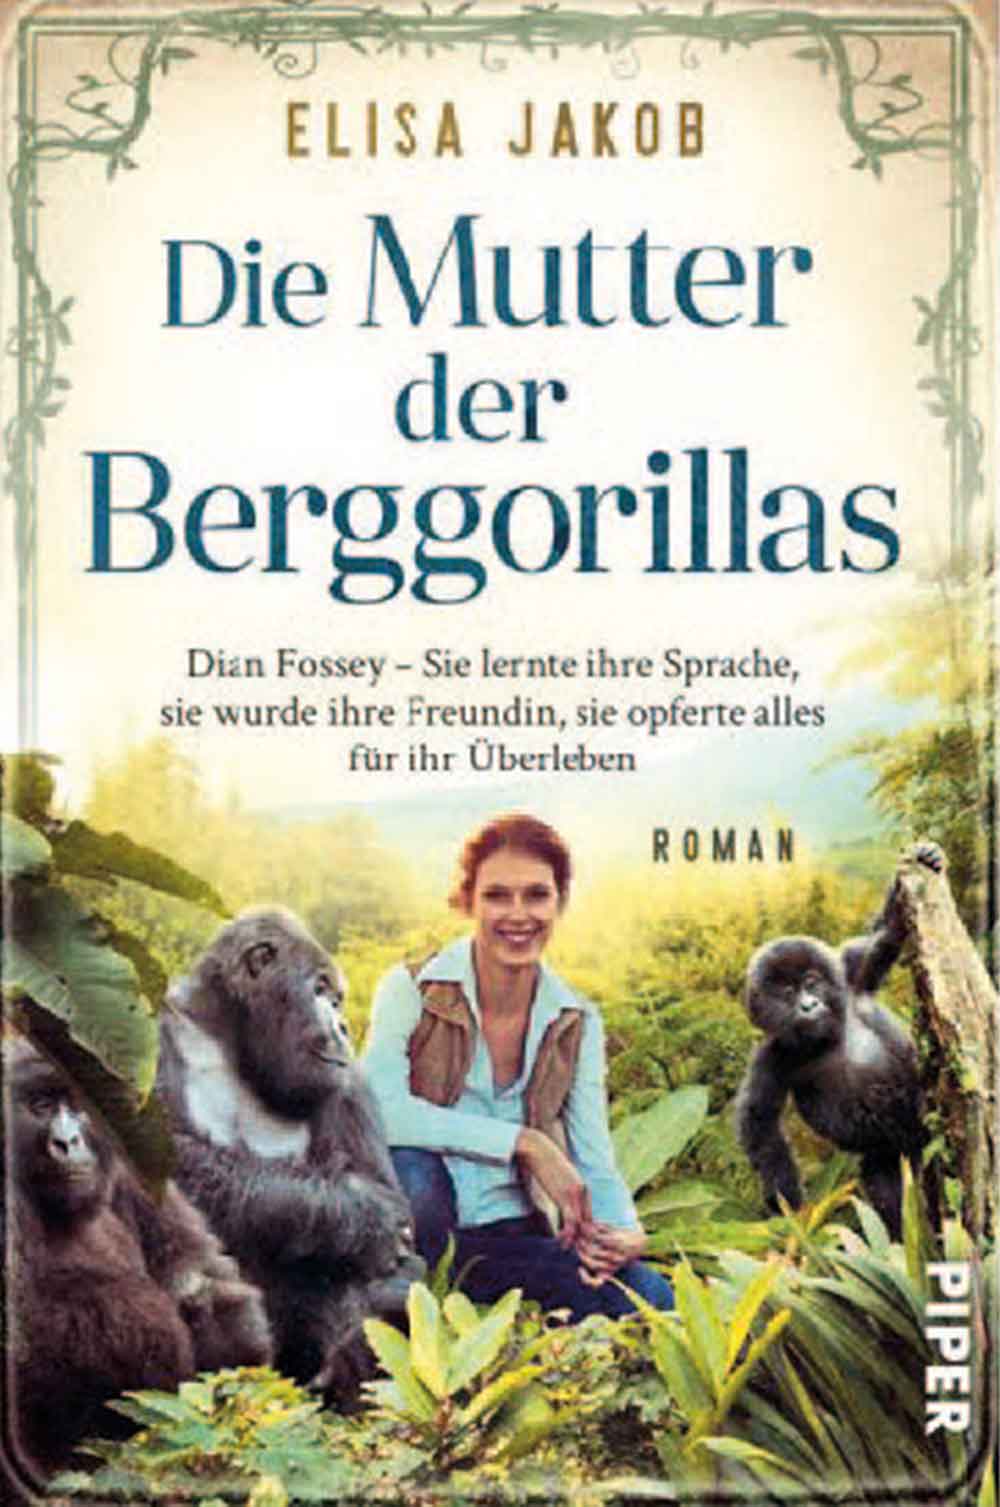 Die Mutter der Berggorillas